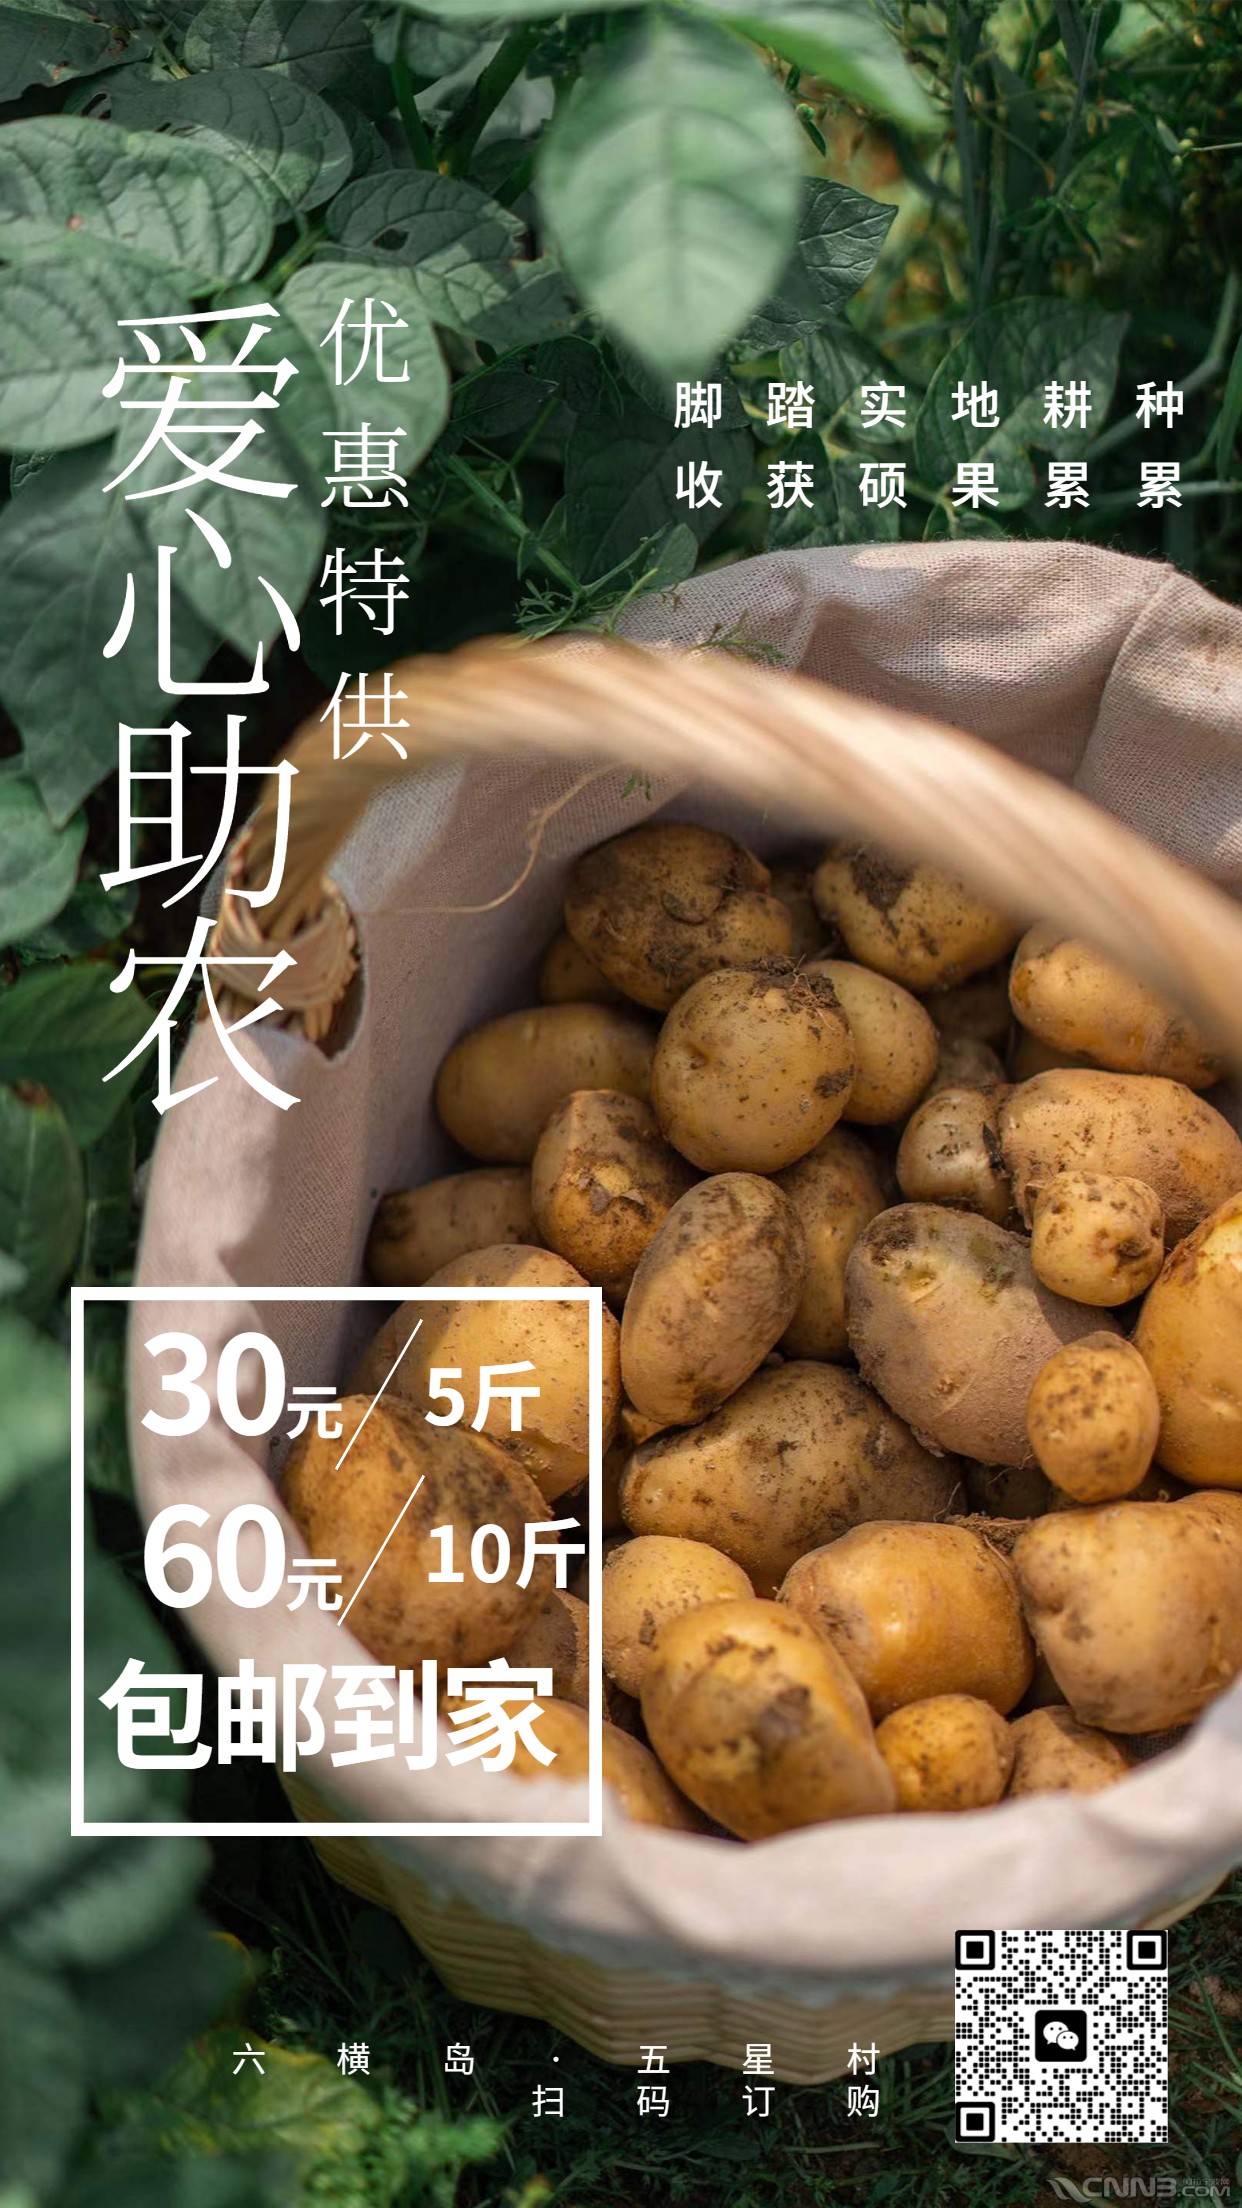 通用中国农民丰收节宣传公众号首图 (1).jpg